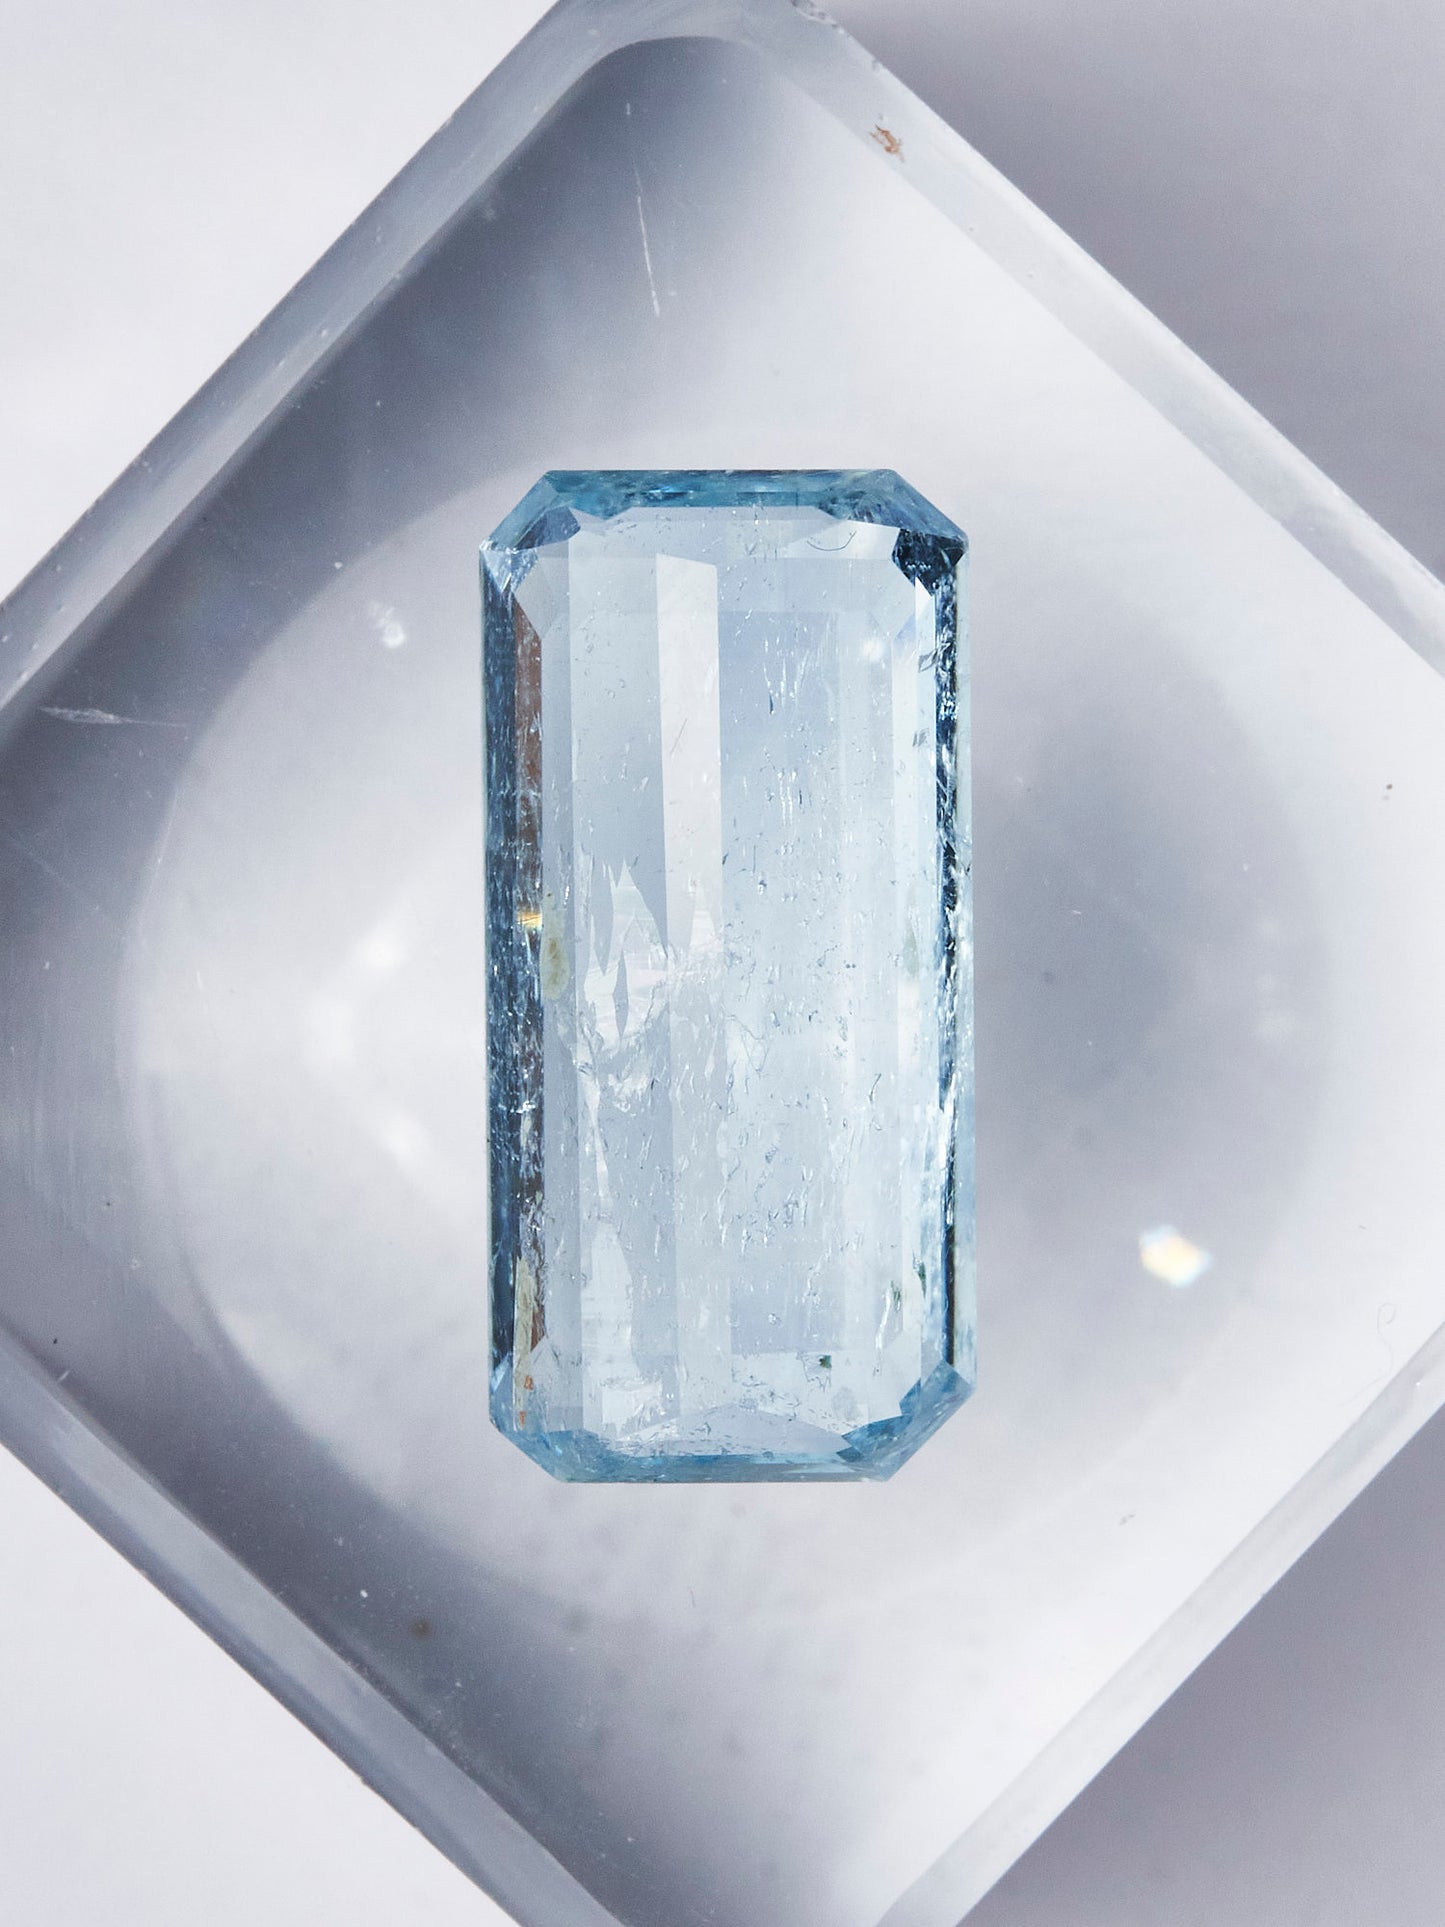 Aquamarine Gemstones